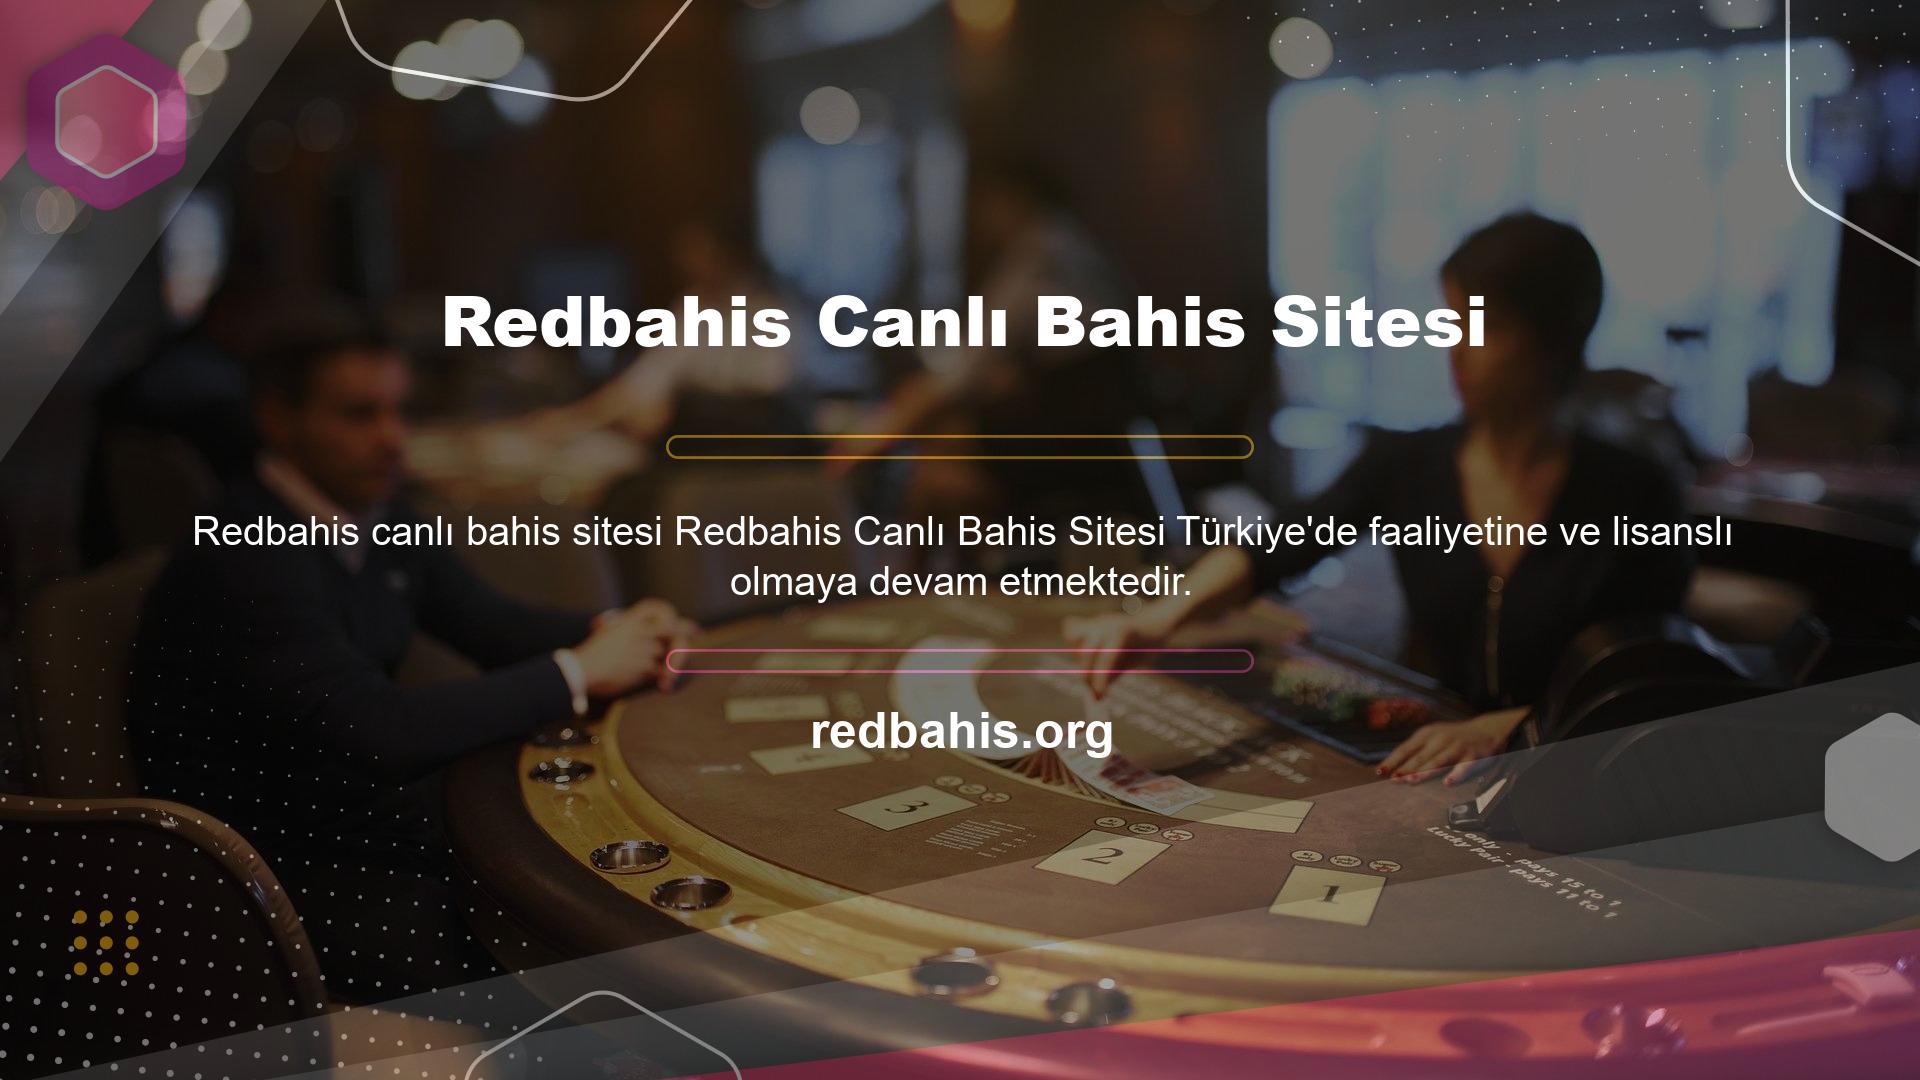 Redbahis ortaklık programını işleten kullanıcılar, canlı bahis sitelerinde promosyon oyunlarına katılma ve ödeme yapma olanağına sahiptir